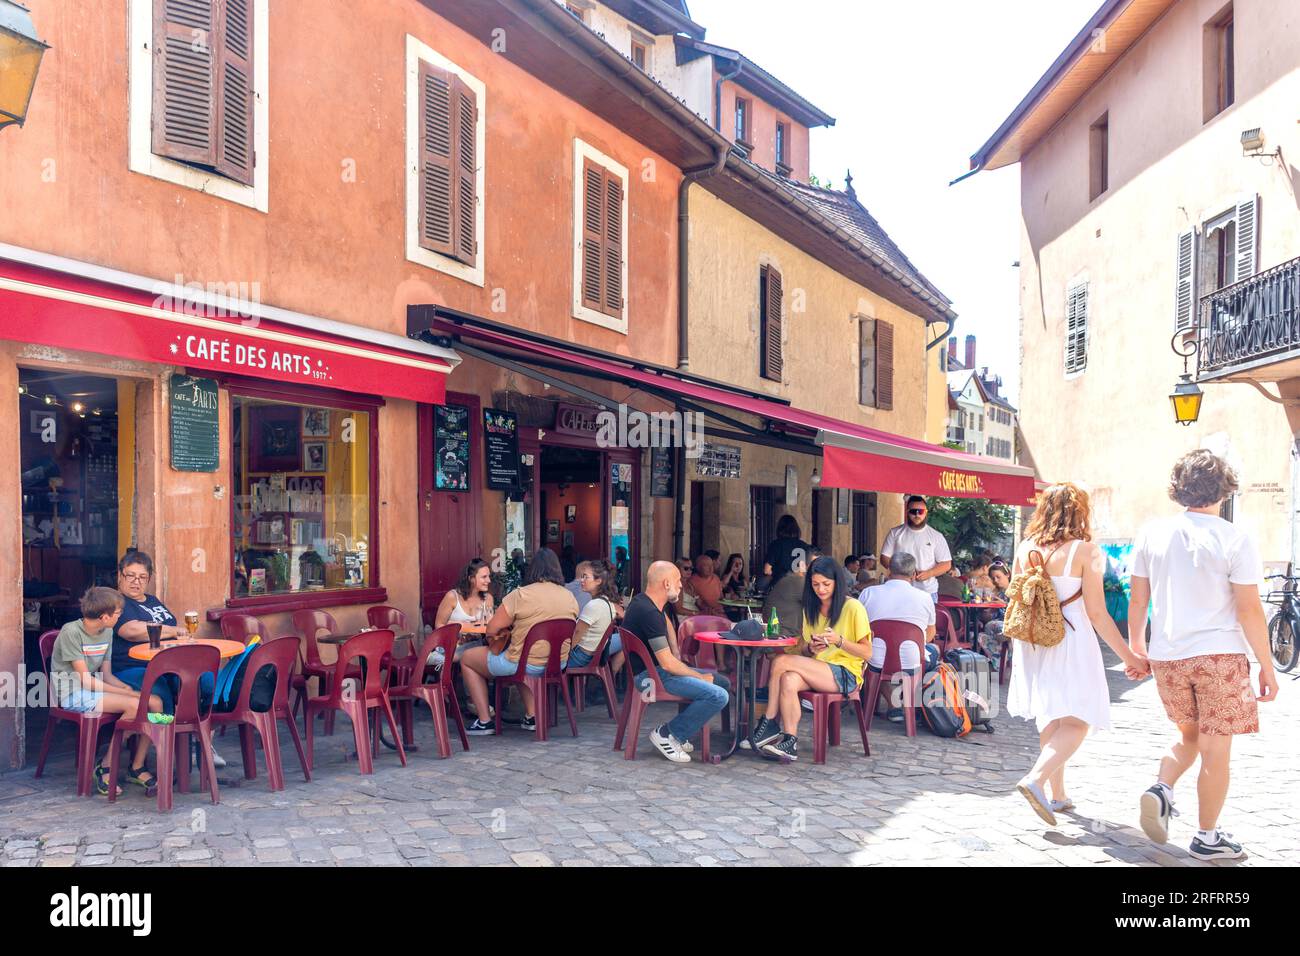 Cafe des Arts, Passage de l'Isle, Vieille Ville, Annecy, Haute-Savoie, Auvergne-Rhône-Alpes, France Stock Photo